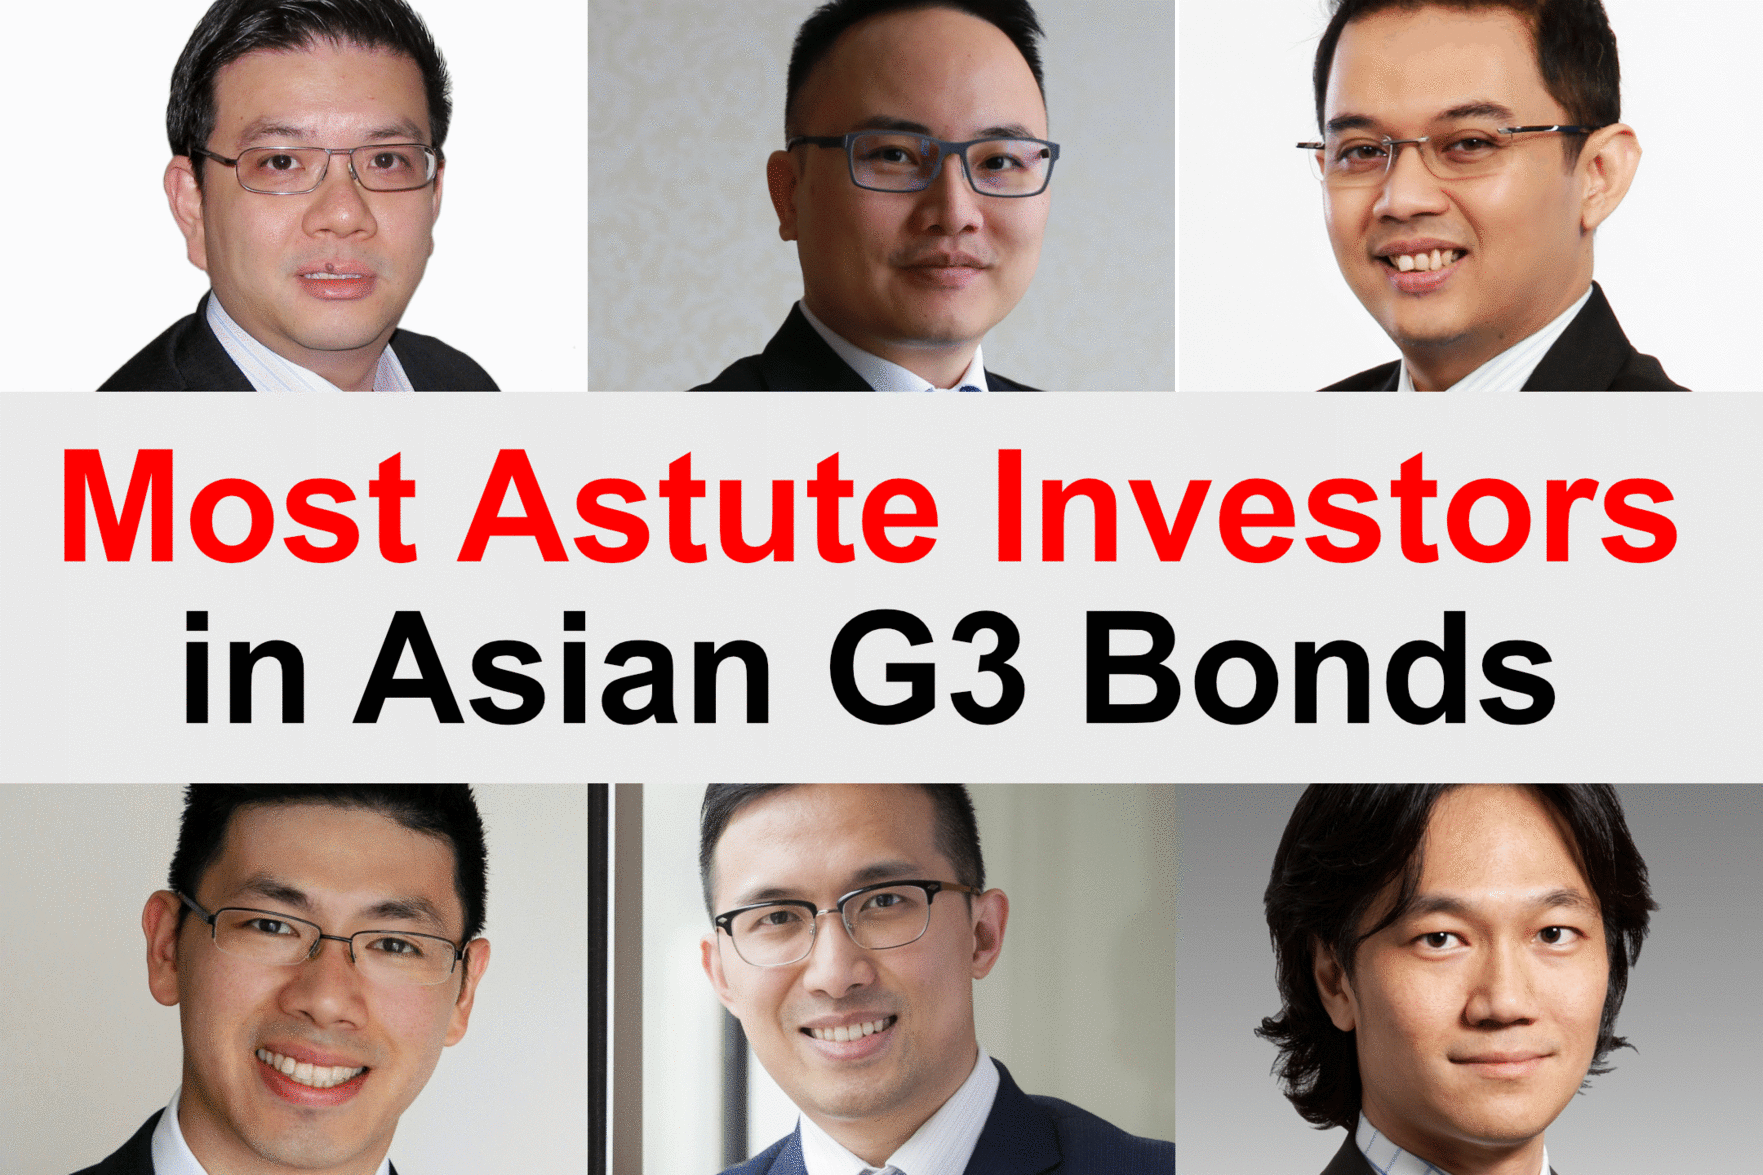 Asian G3 Bonds